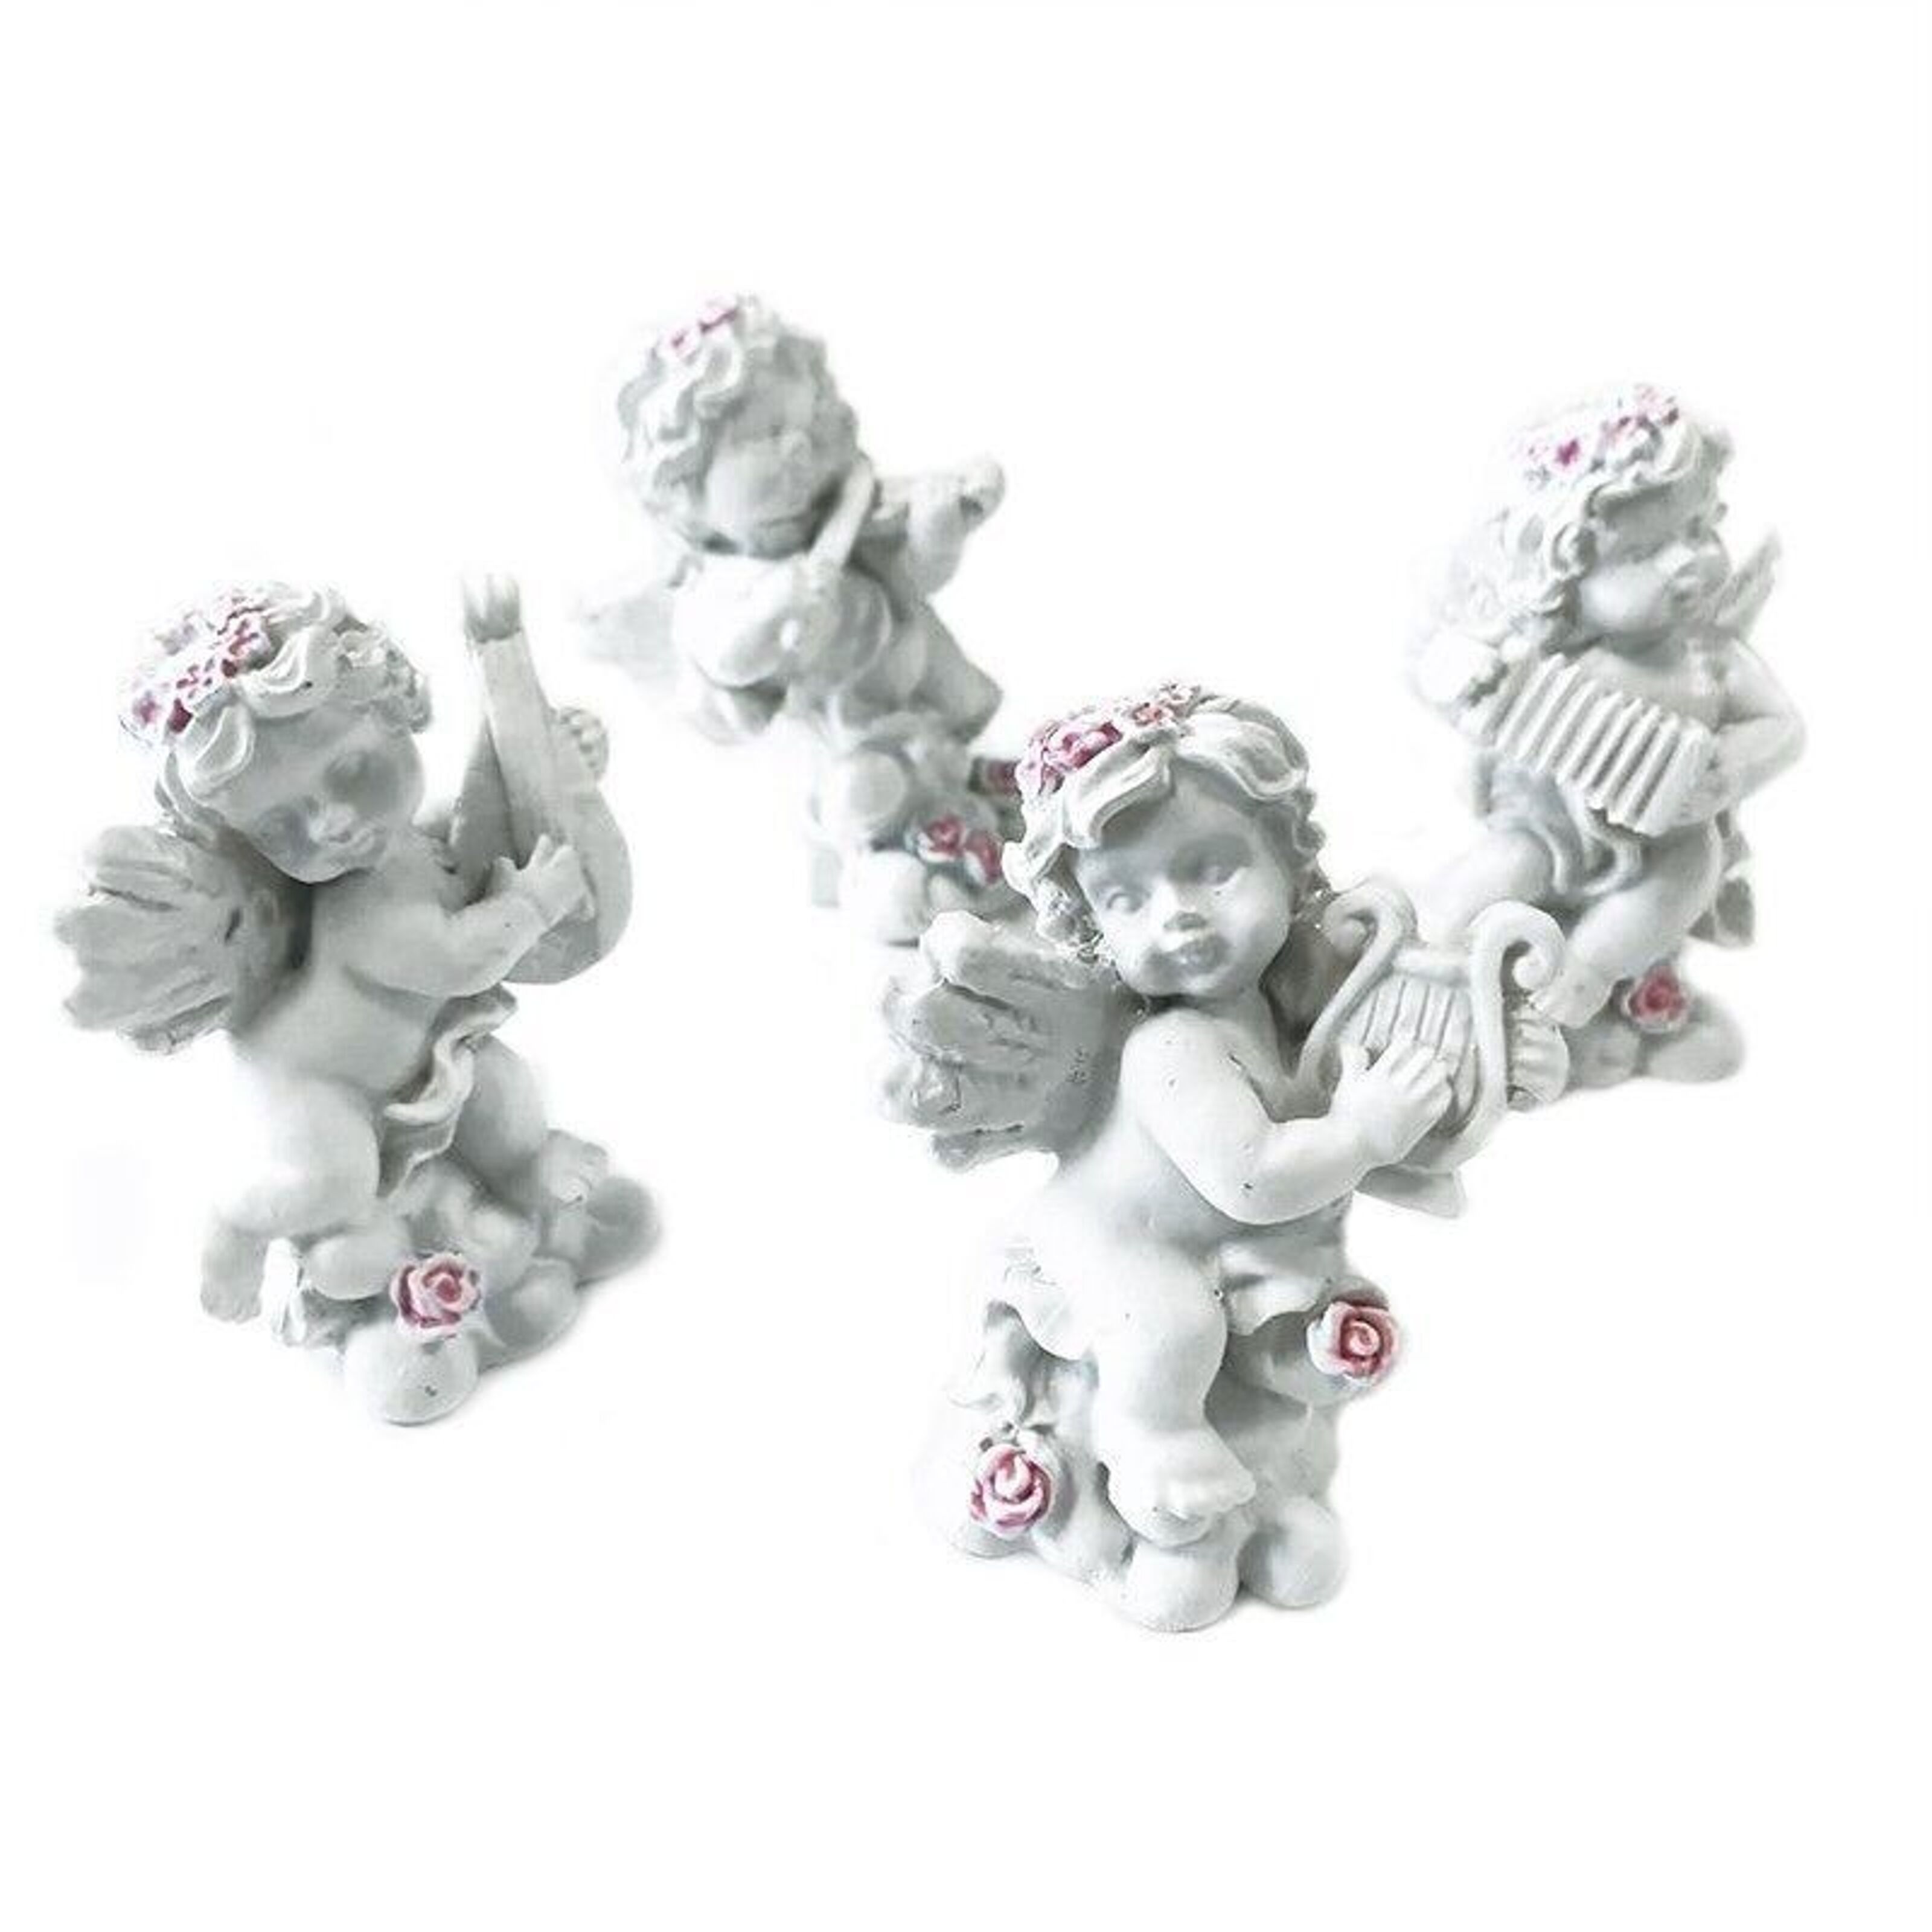 Petits anges en porcelaine, blanc - 9cm - Lot de 4